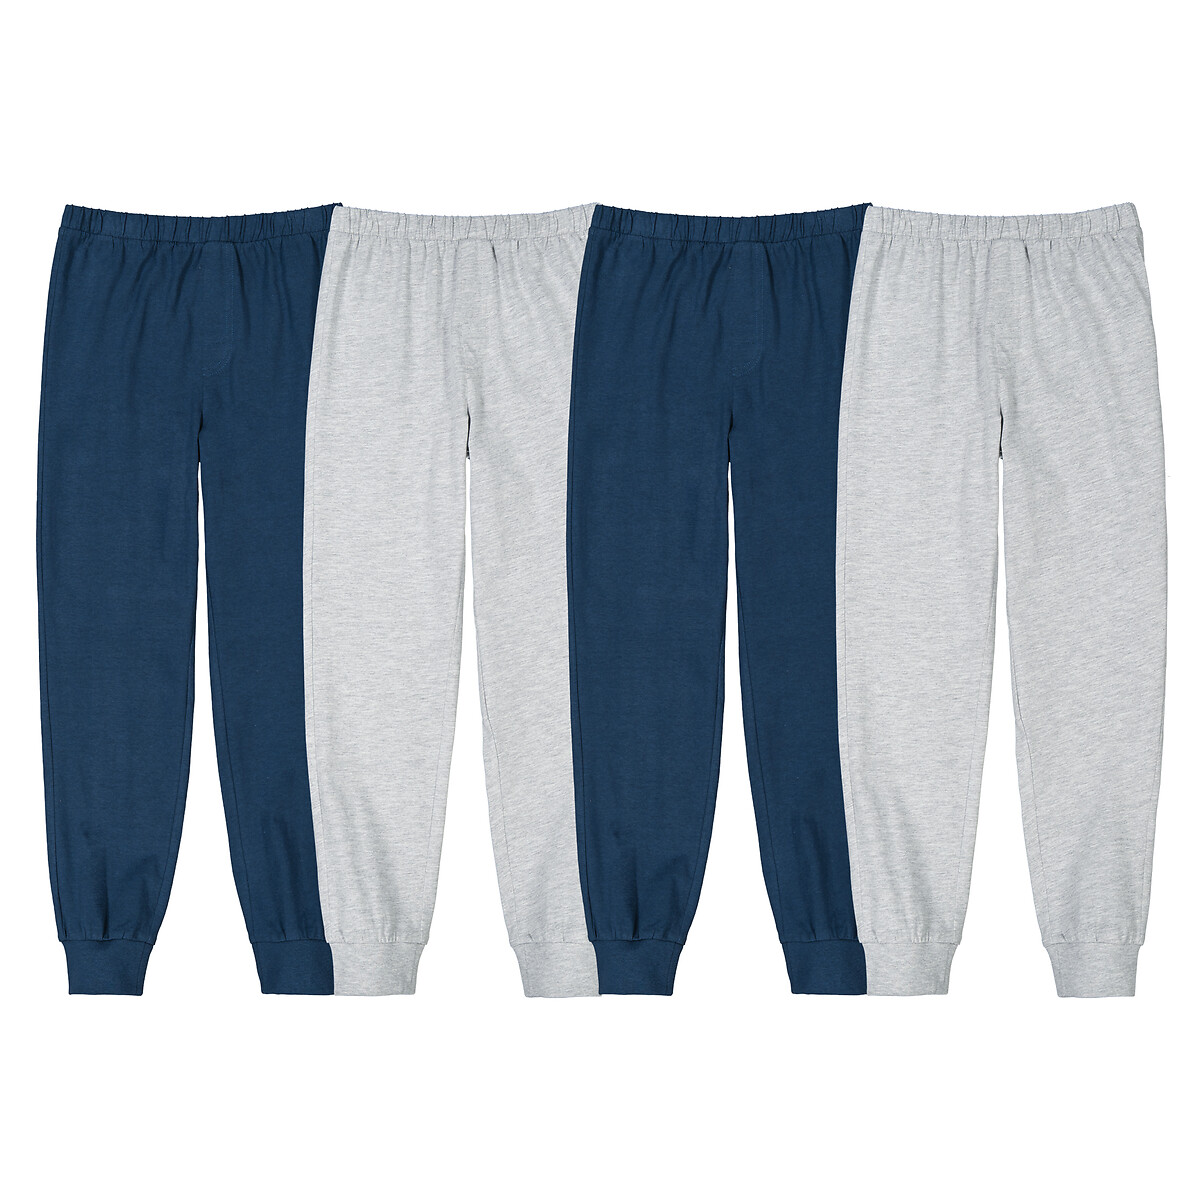 Комплект из четырех брюк пижамных из джерси 4 года - 102 см синий комплект из четырех брюк пижамных из джерси 4 года 102 см синий